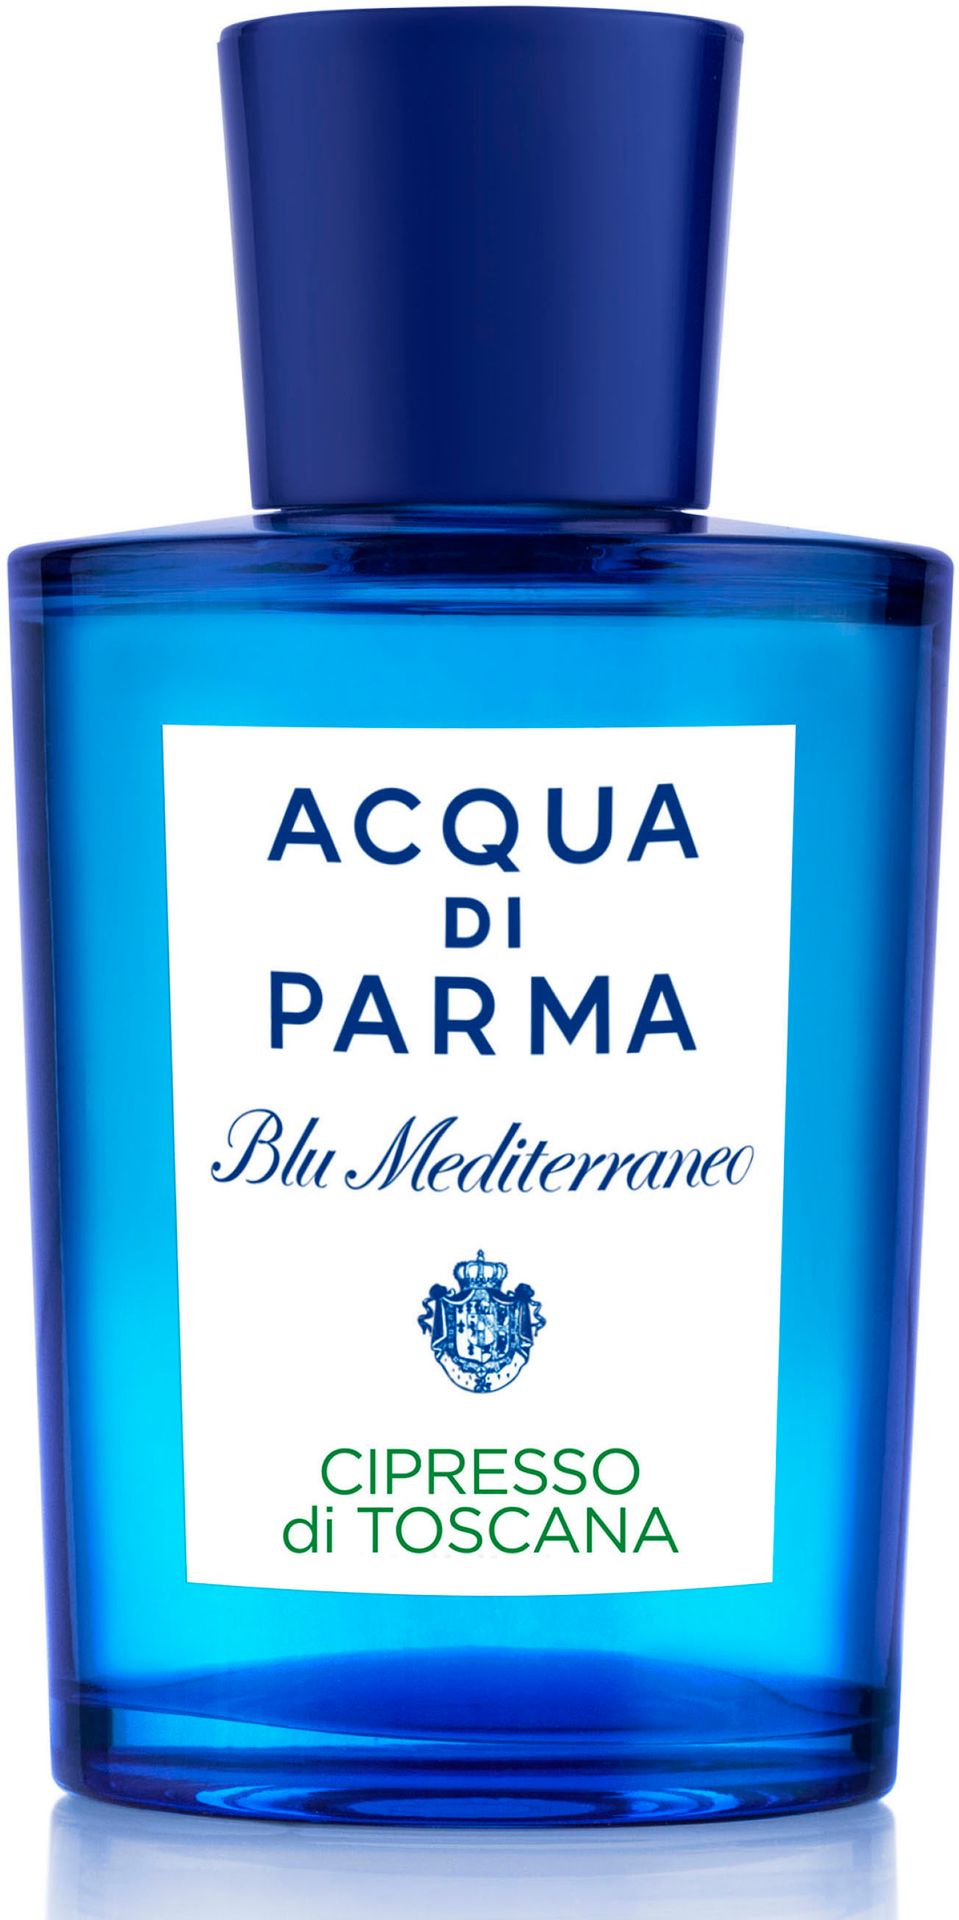 Acqua Di Parma Blu Mediterraneo Cipresso di Toscana woda toaletowa 150ml